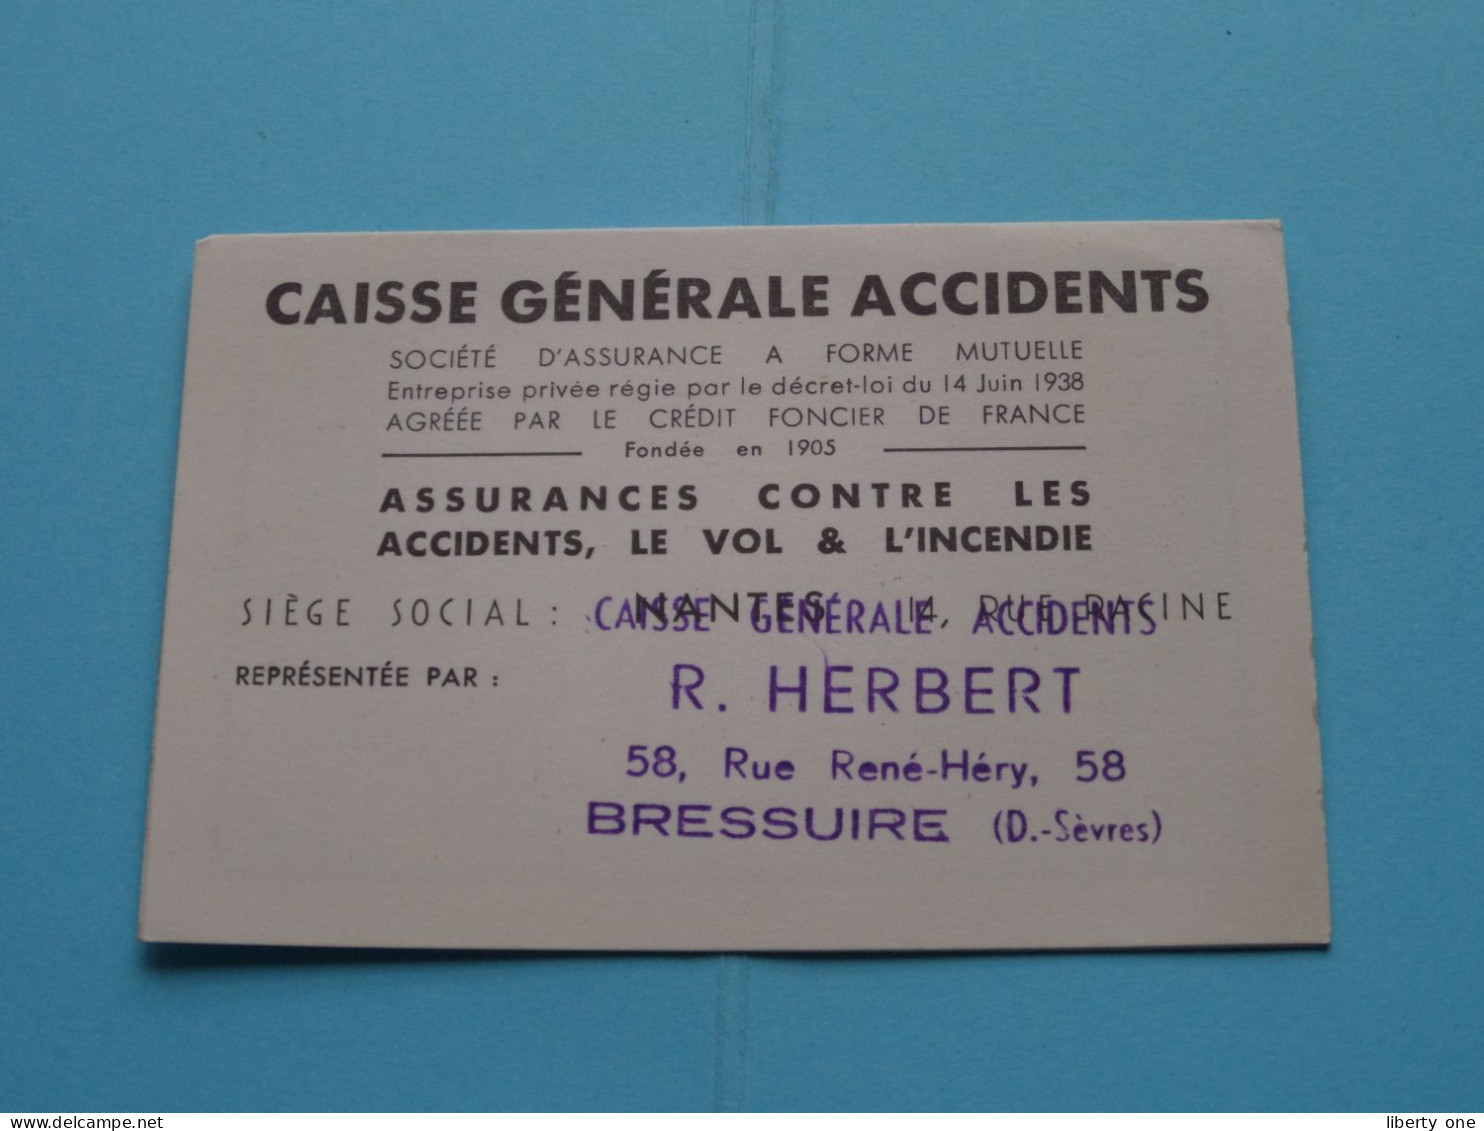 La CAISSE Générale ACCIDENTS > Rue Racine NANTES (FR) > ( Zie / Voir SCANS ) CDV ! - Cartes De Visite